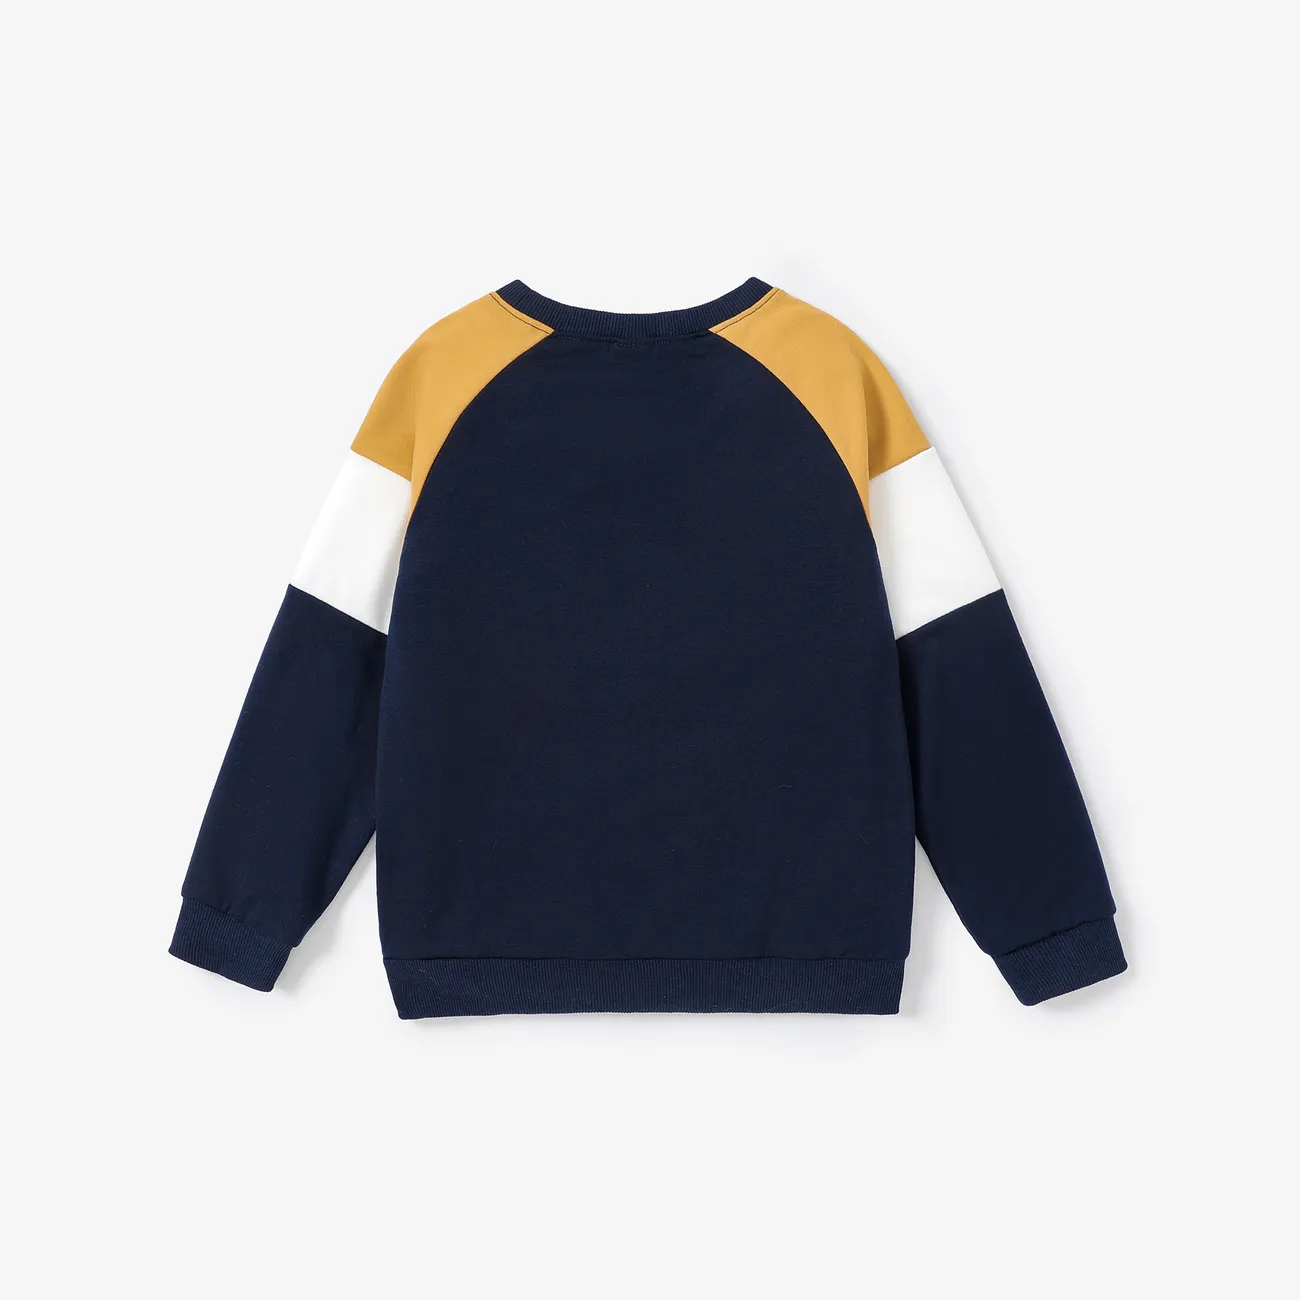 Kid Boy Solid und Stoff Stitching Sweatshirt/Schuhe/Hose tiefes Blau big image 1